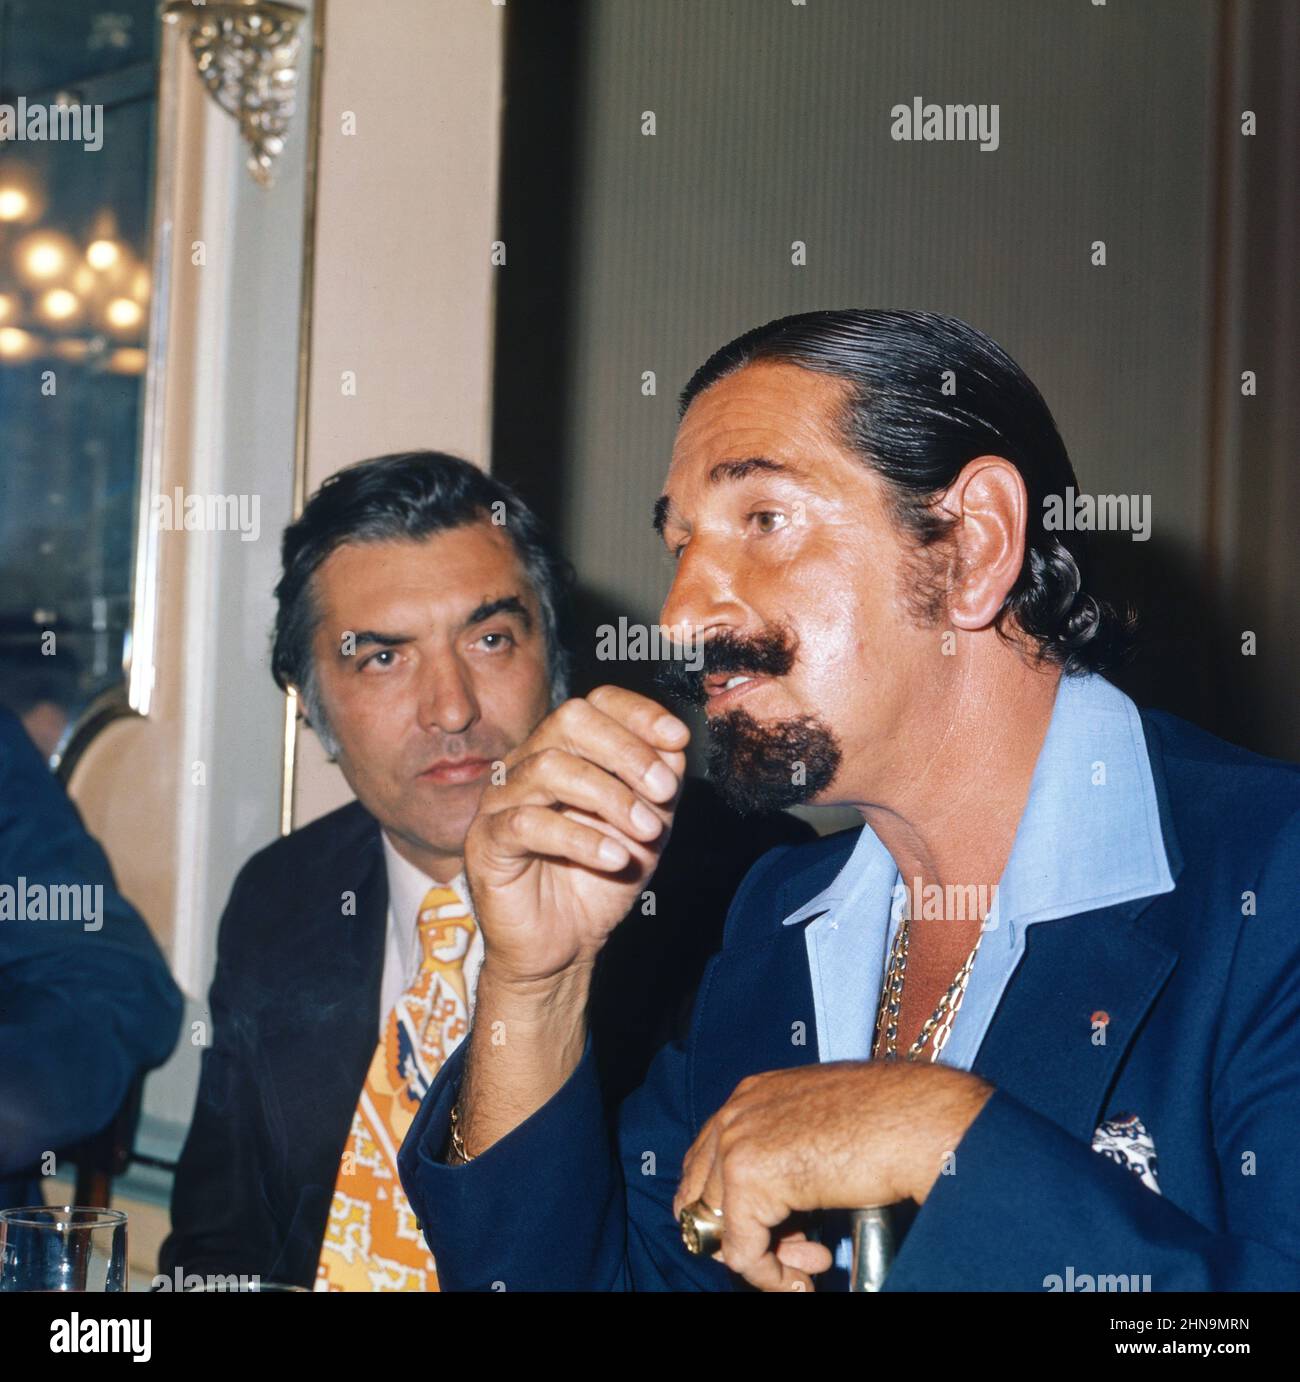 Jaime de Mora y Aragon, spanischer Schauspieler und Lebemann, neben Helmut Zilk (links) bei einer Abendveranstaltung in Österreich, um 1974. Stock Photo